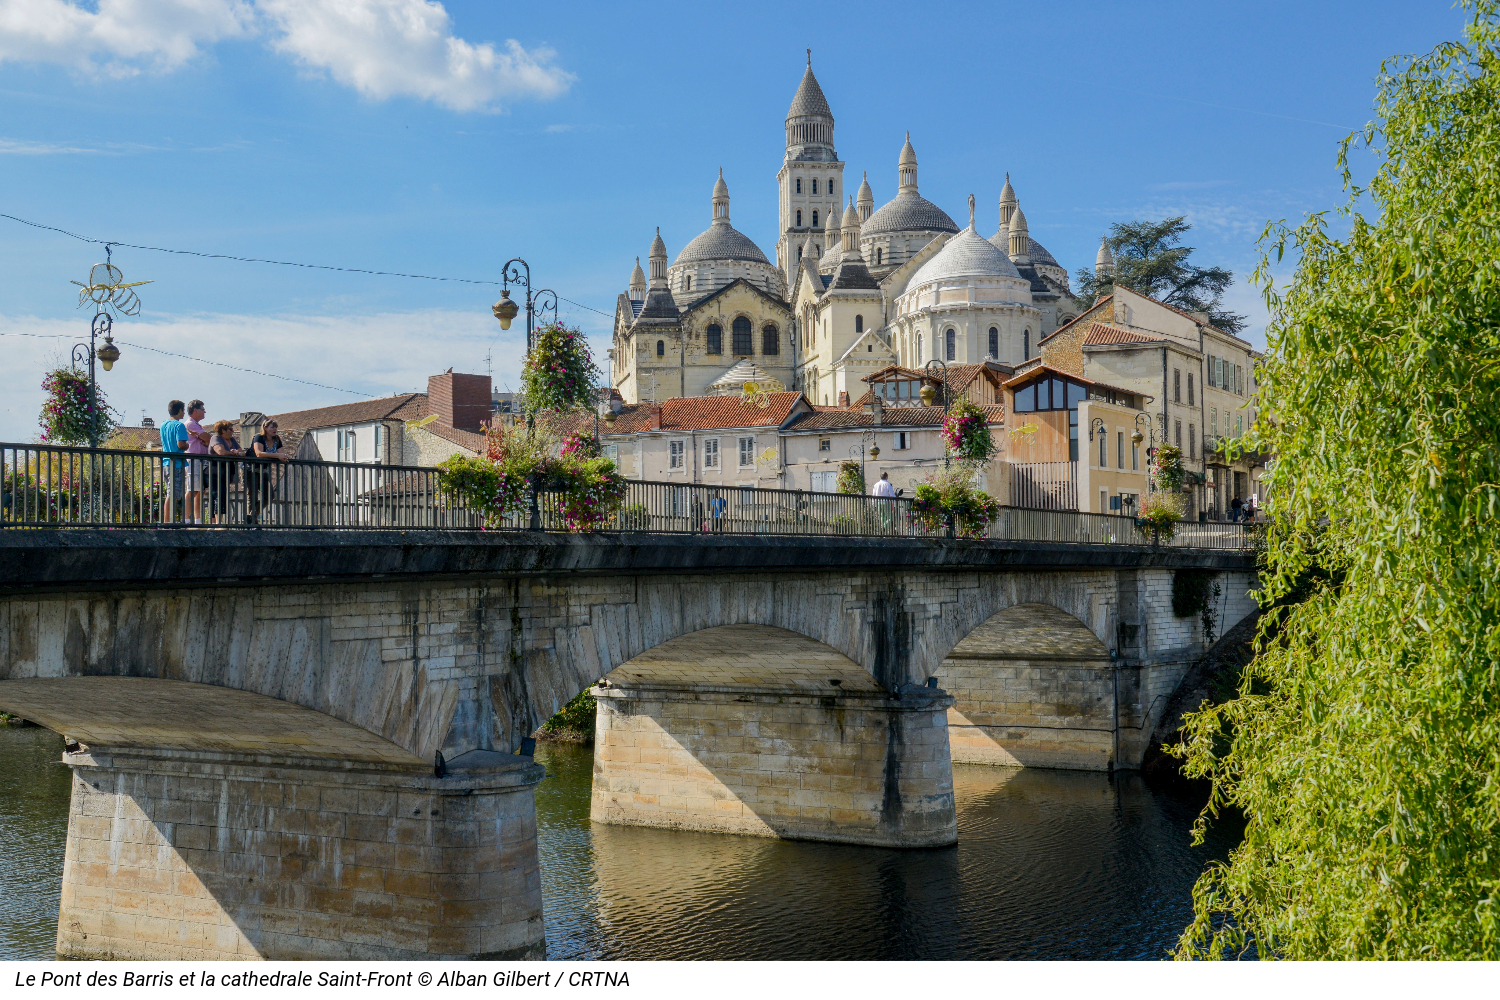 Le Pont des Barris et la cathédrale Saint-Front